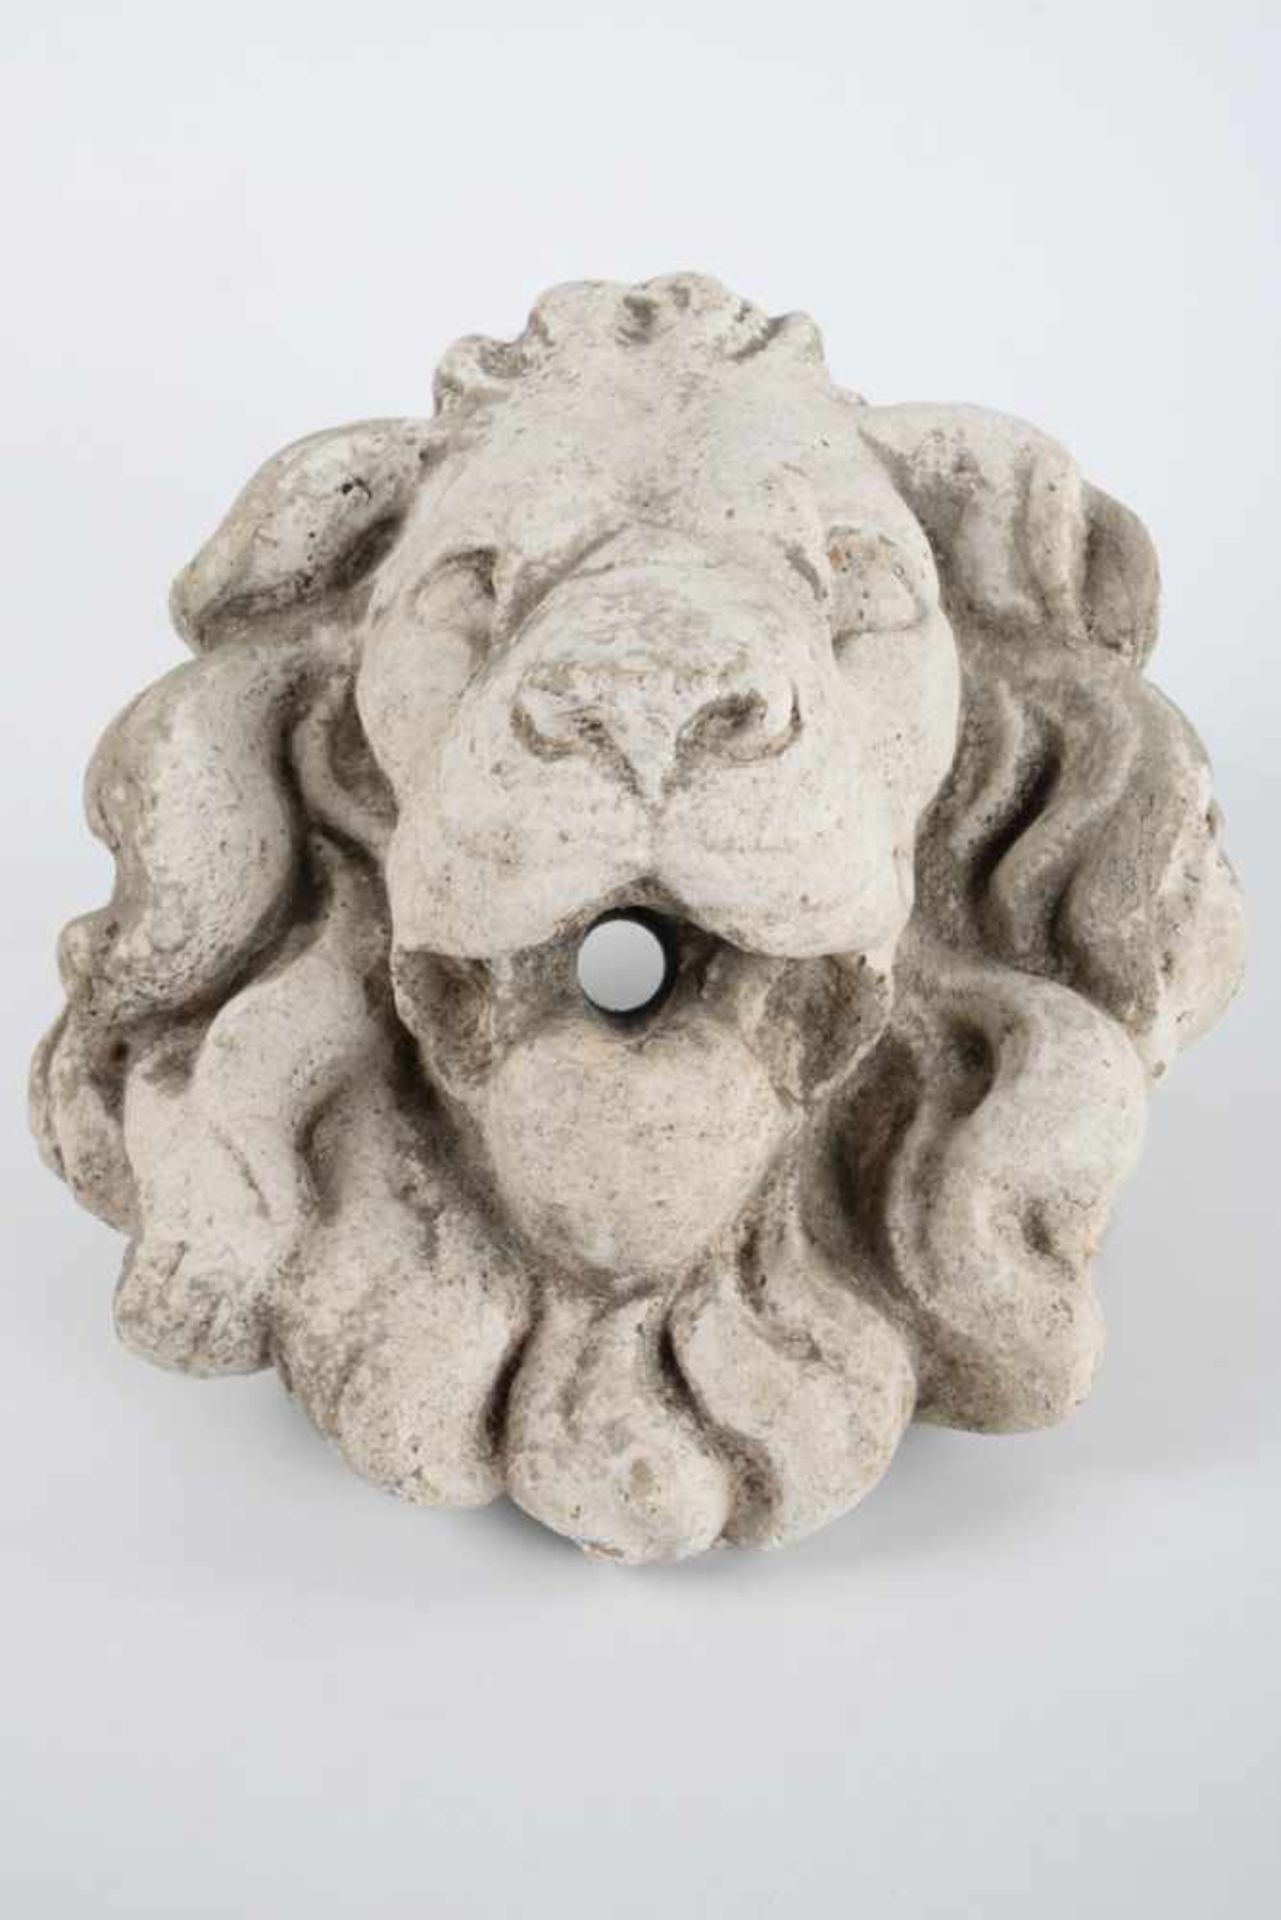 Wasserspeier Löwenkopf.Steinguss, Fassung angegangen, etwas Grünspan, wohl antik. Maße ca. 27 x 30 x